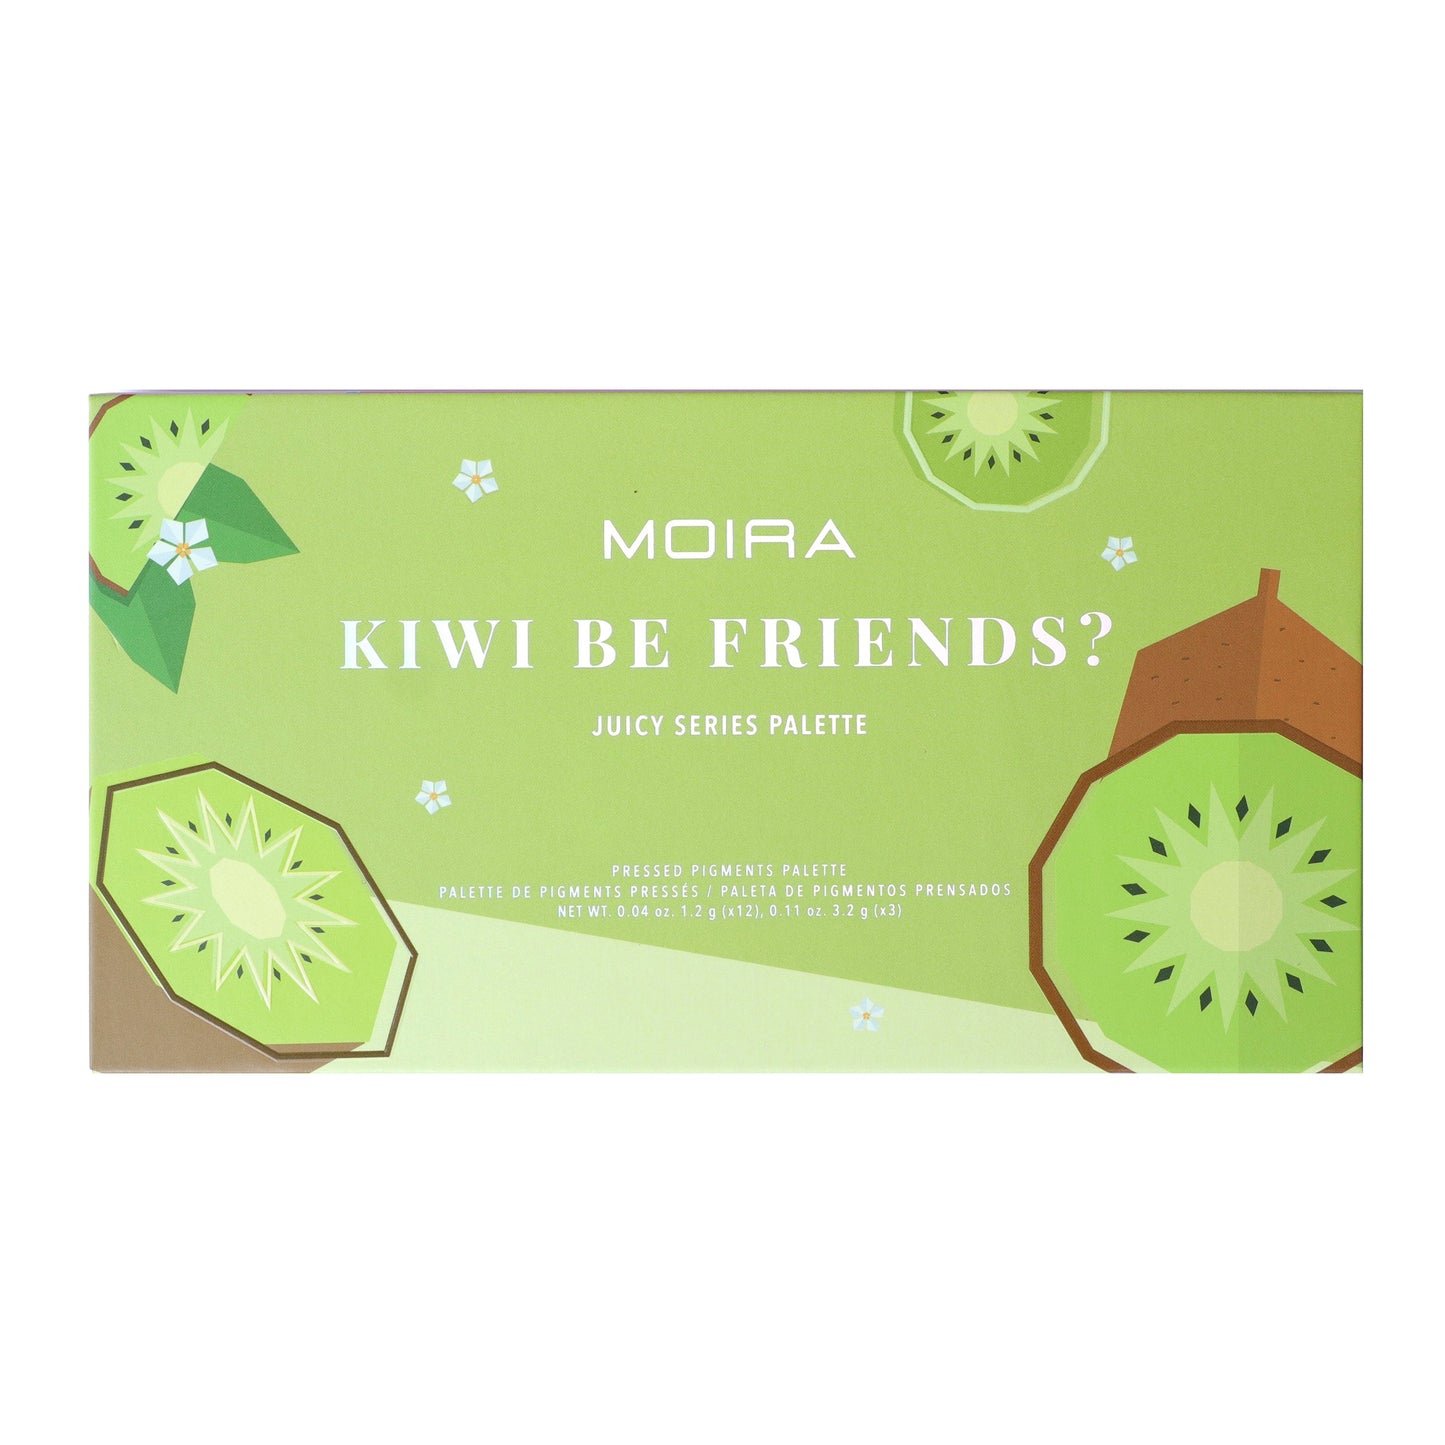 Kiwi Be Friends? Palette